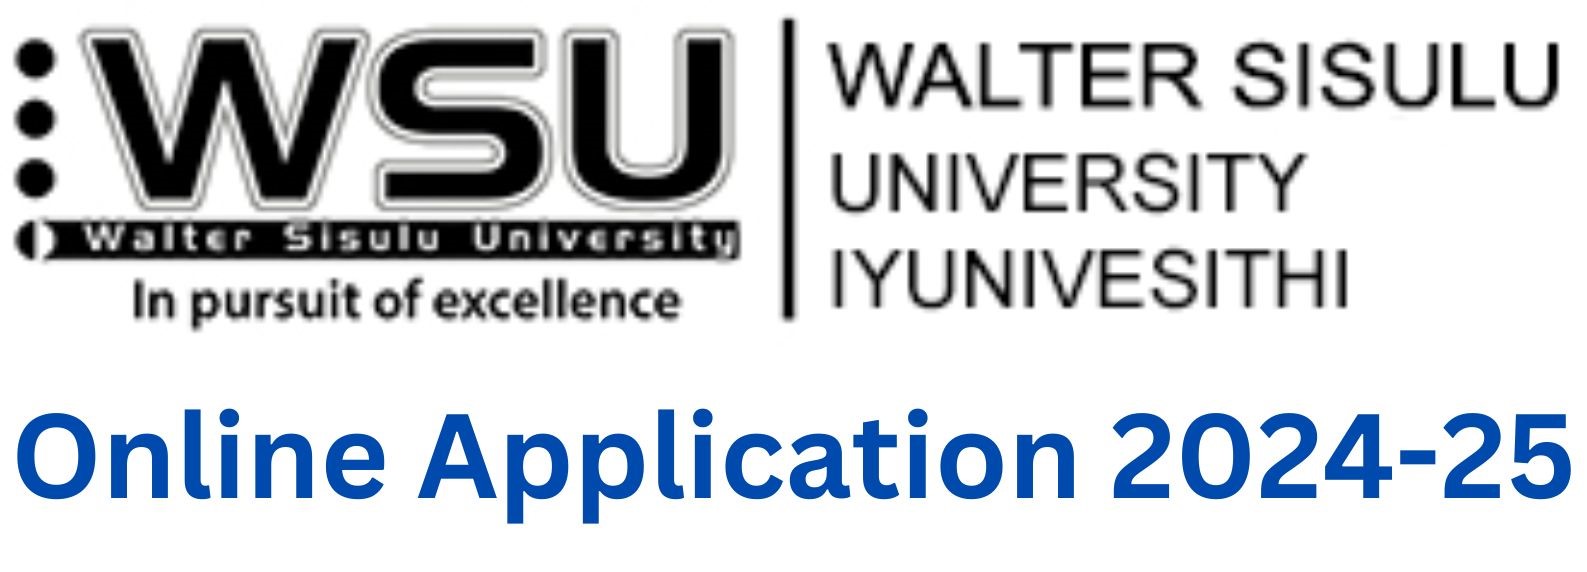 WSU Online Application 2024-25: Process, Fees, Deadline, Documents